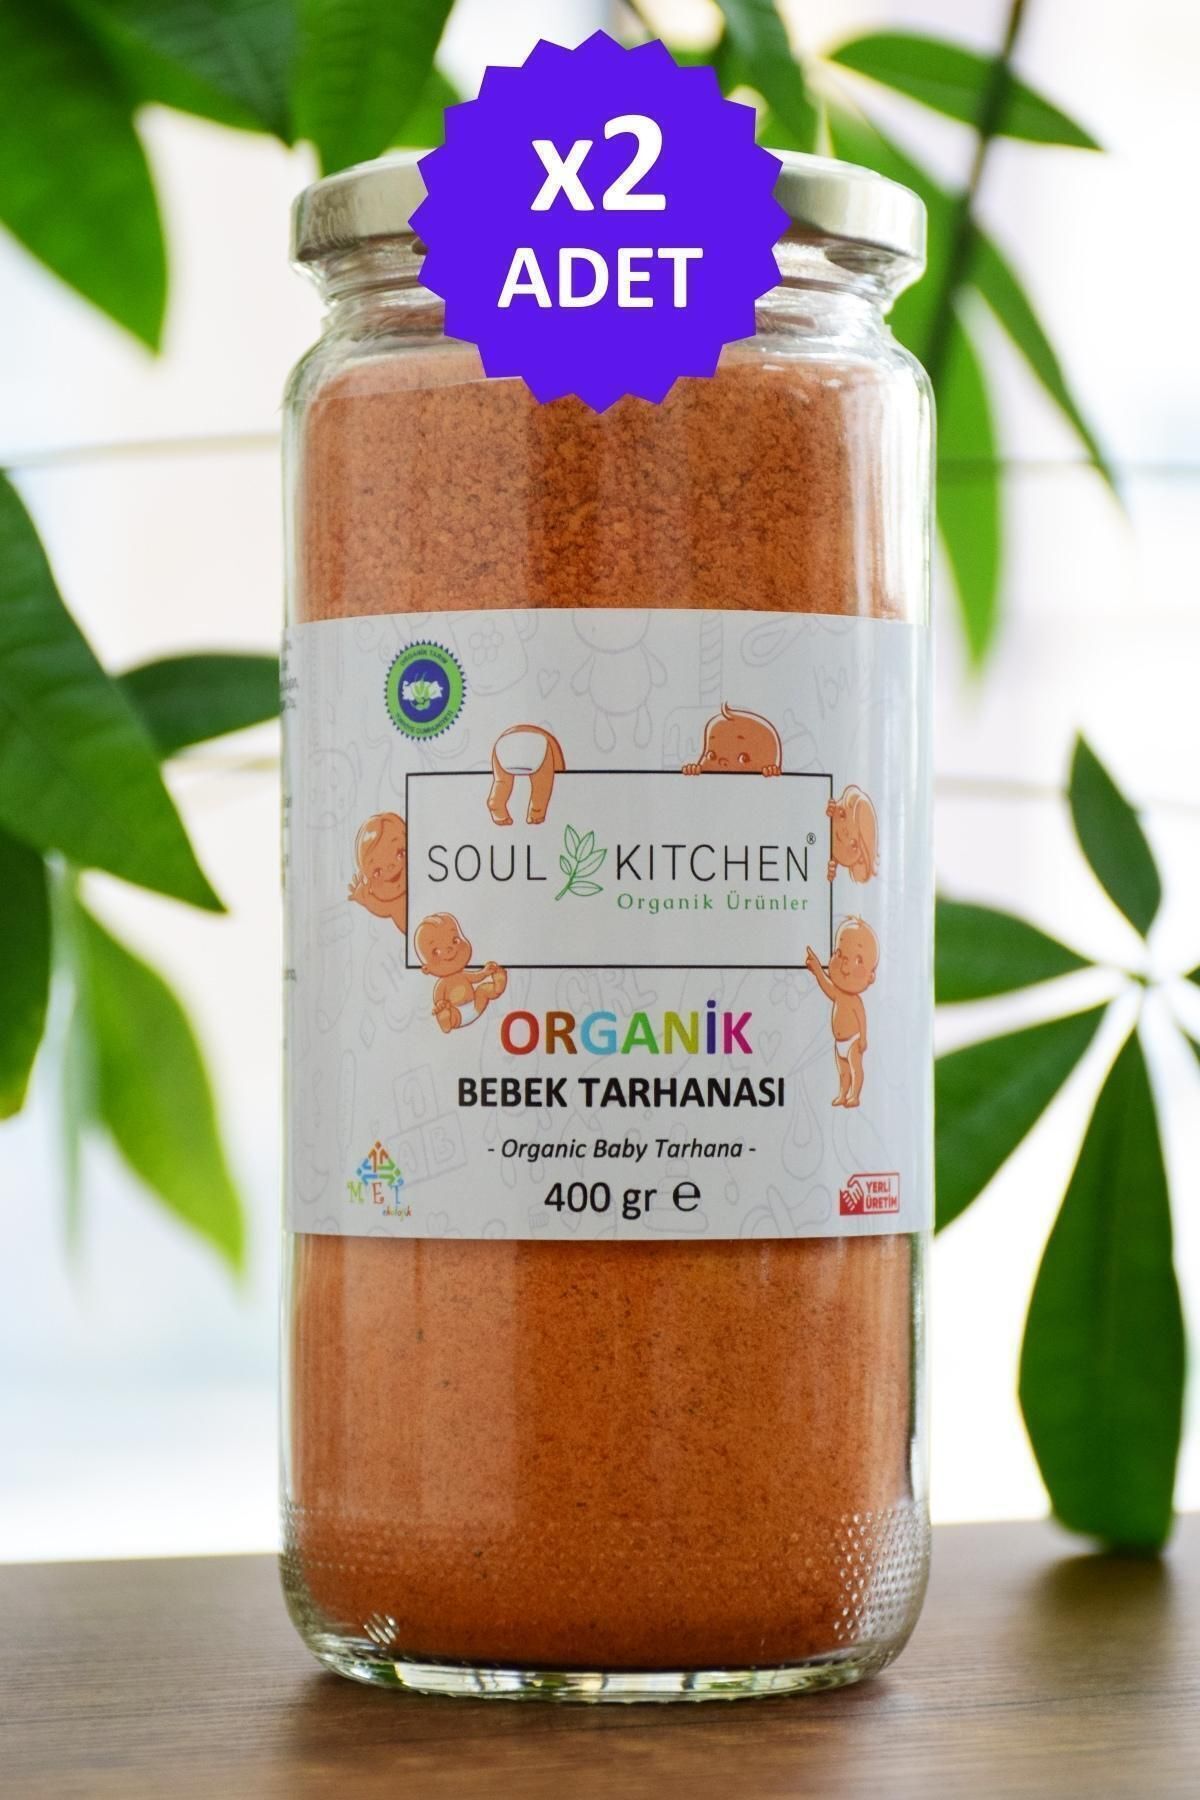 Soul Kitchen Organik Ürünler Organik Bebek Tarhanası 400gr - Cam 2'li Avantaj Set -